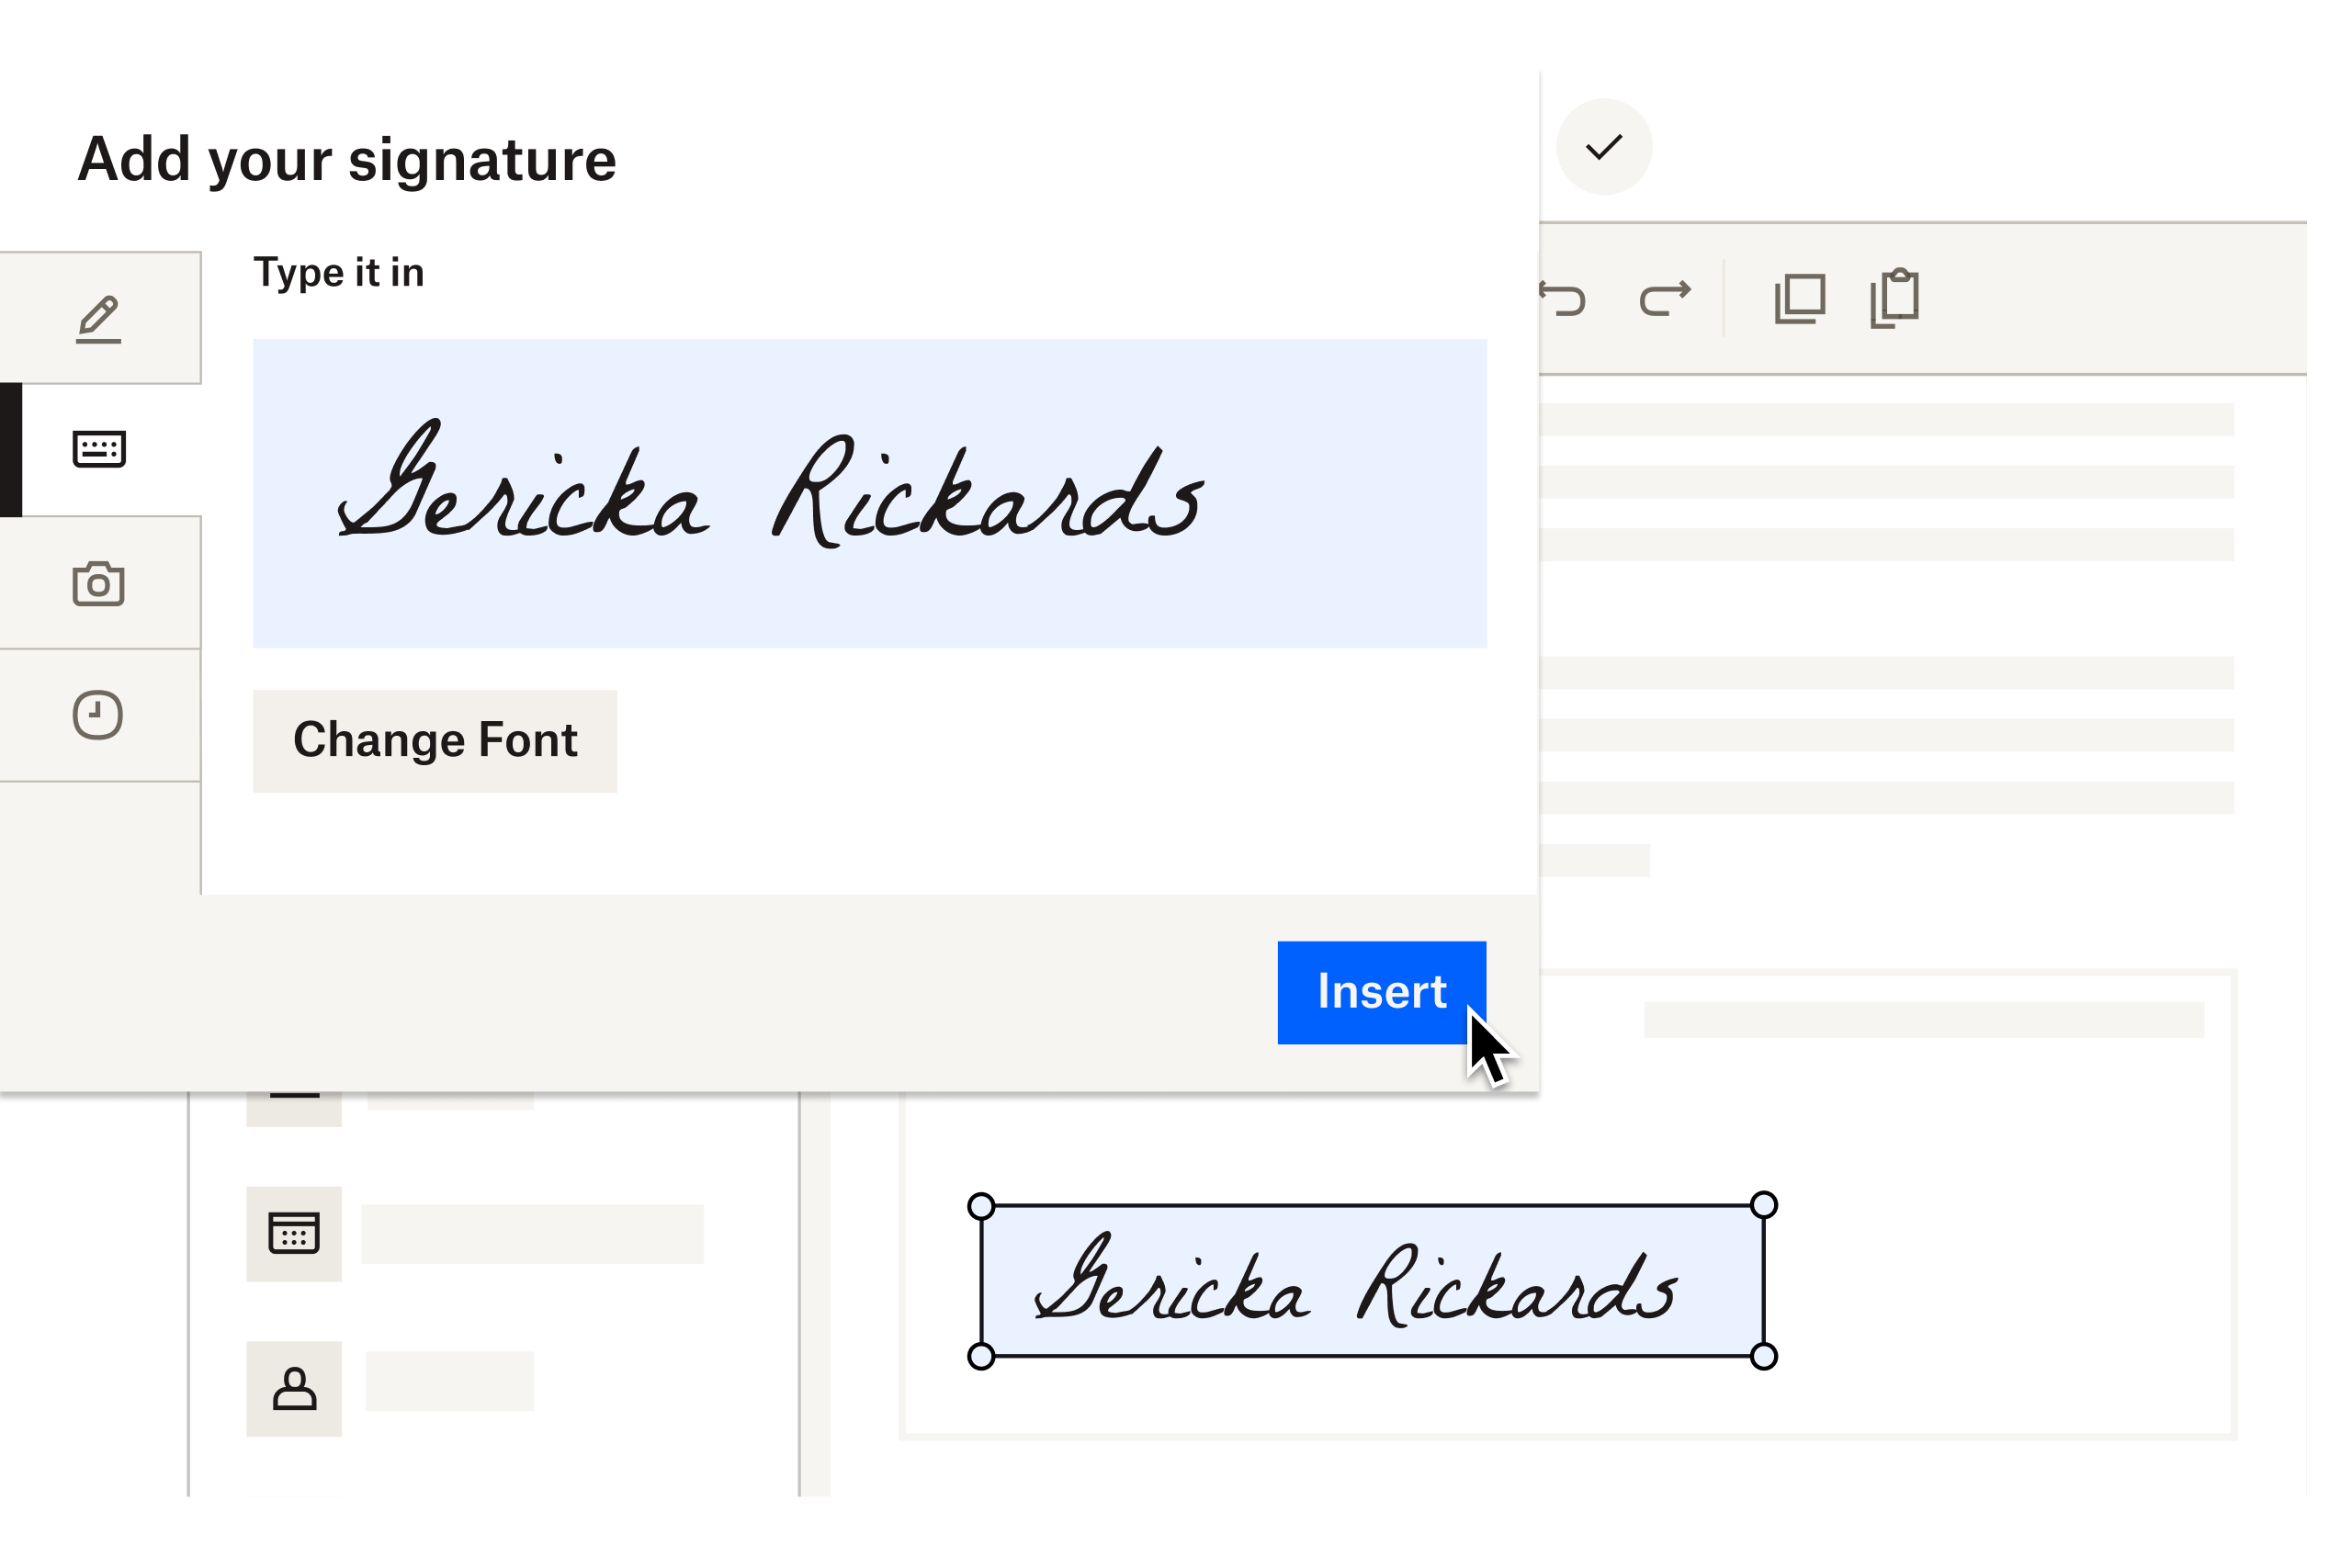 Captura de tela de uma usuária inserindo uma assinatura eletrônica em um documento.